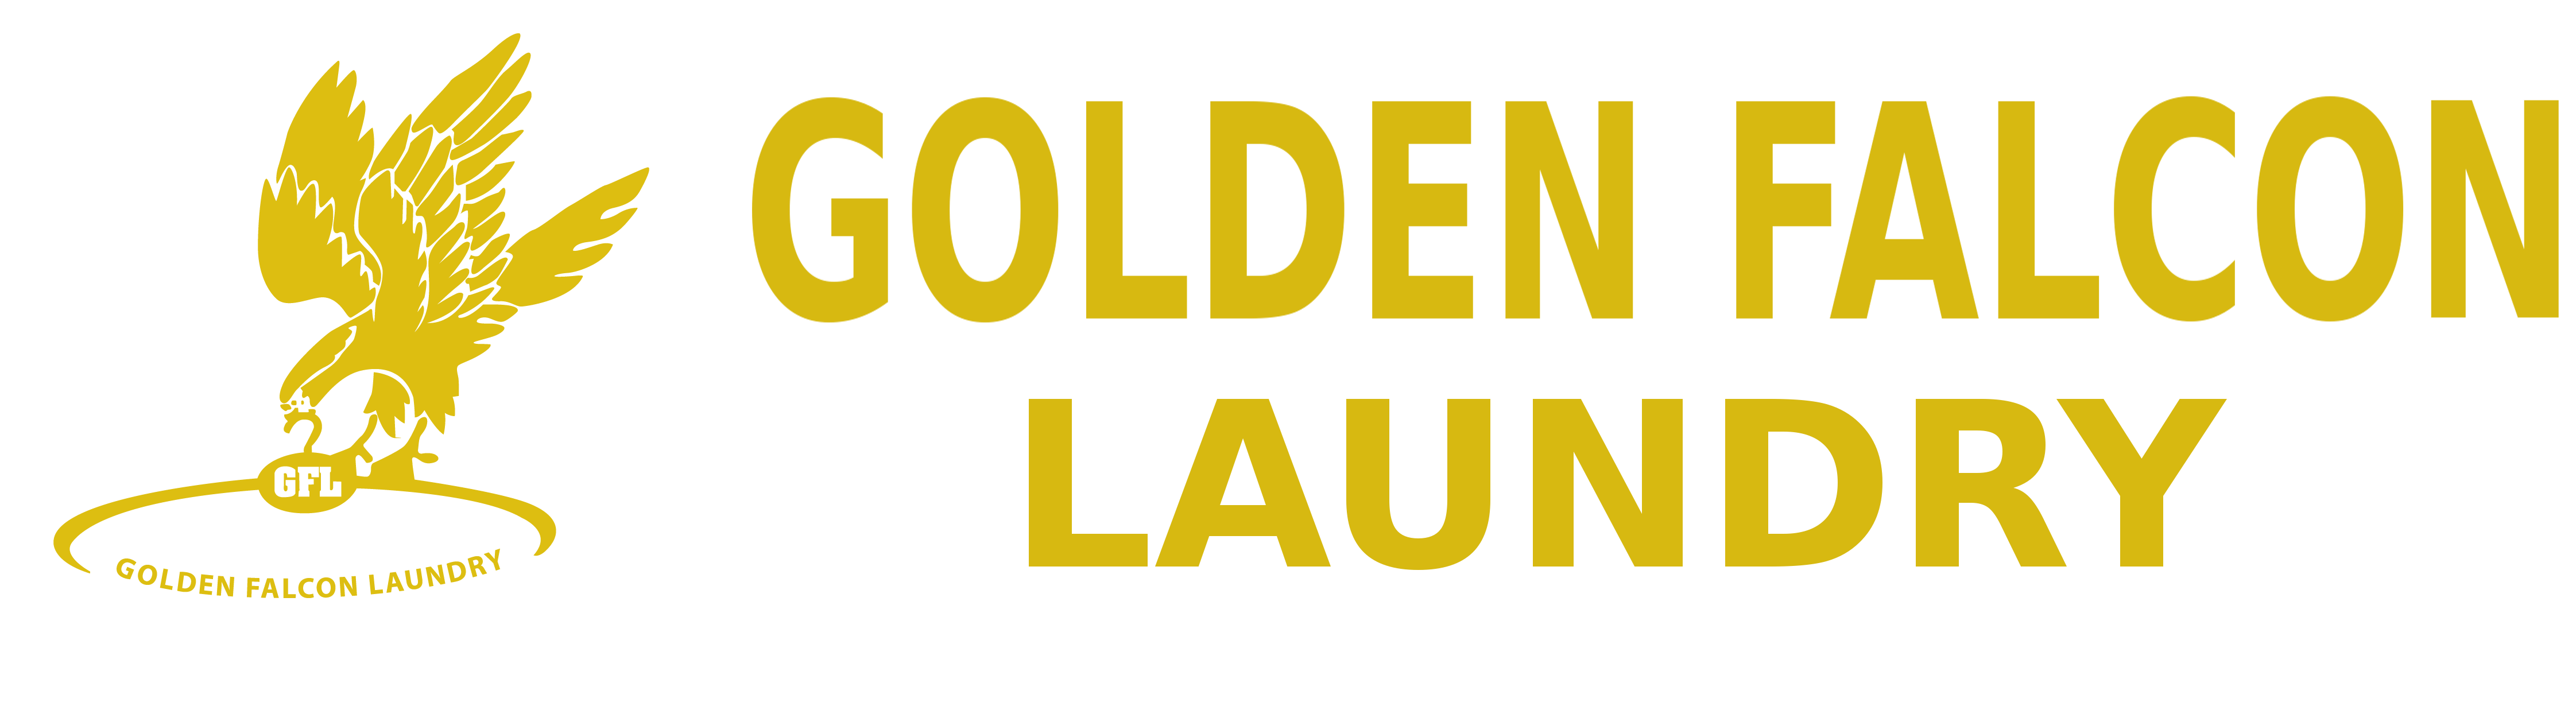 Golden Falcon Laundry, Dubai. Logo